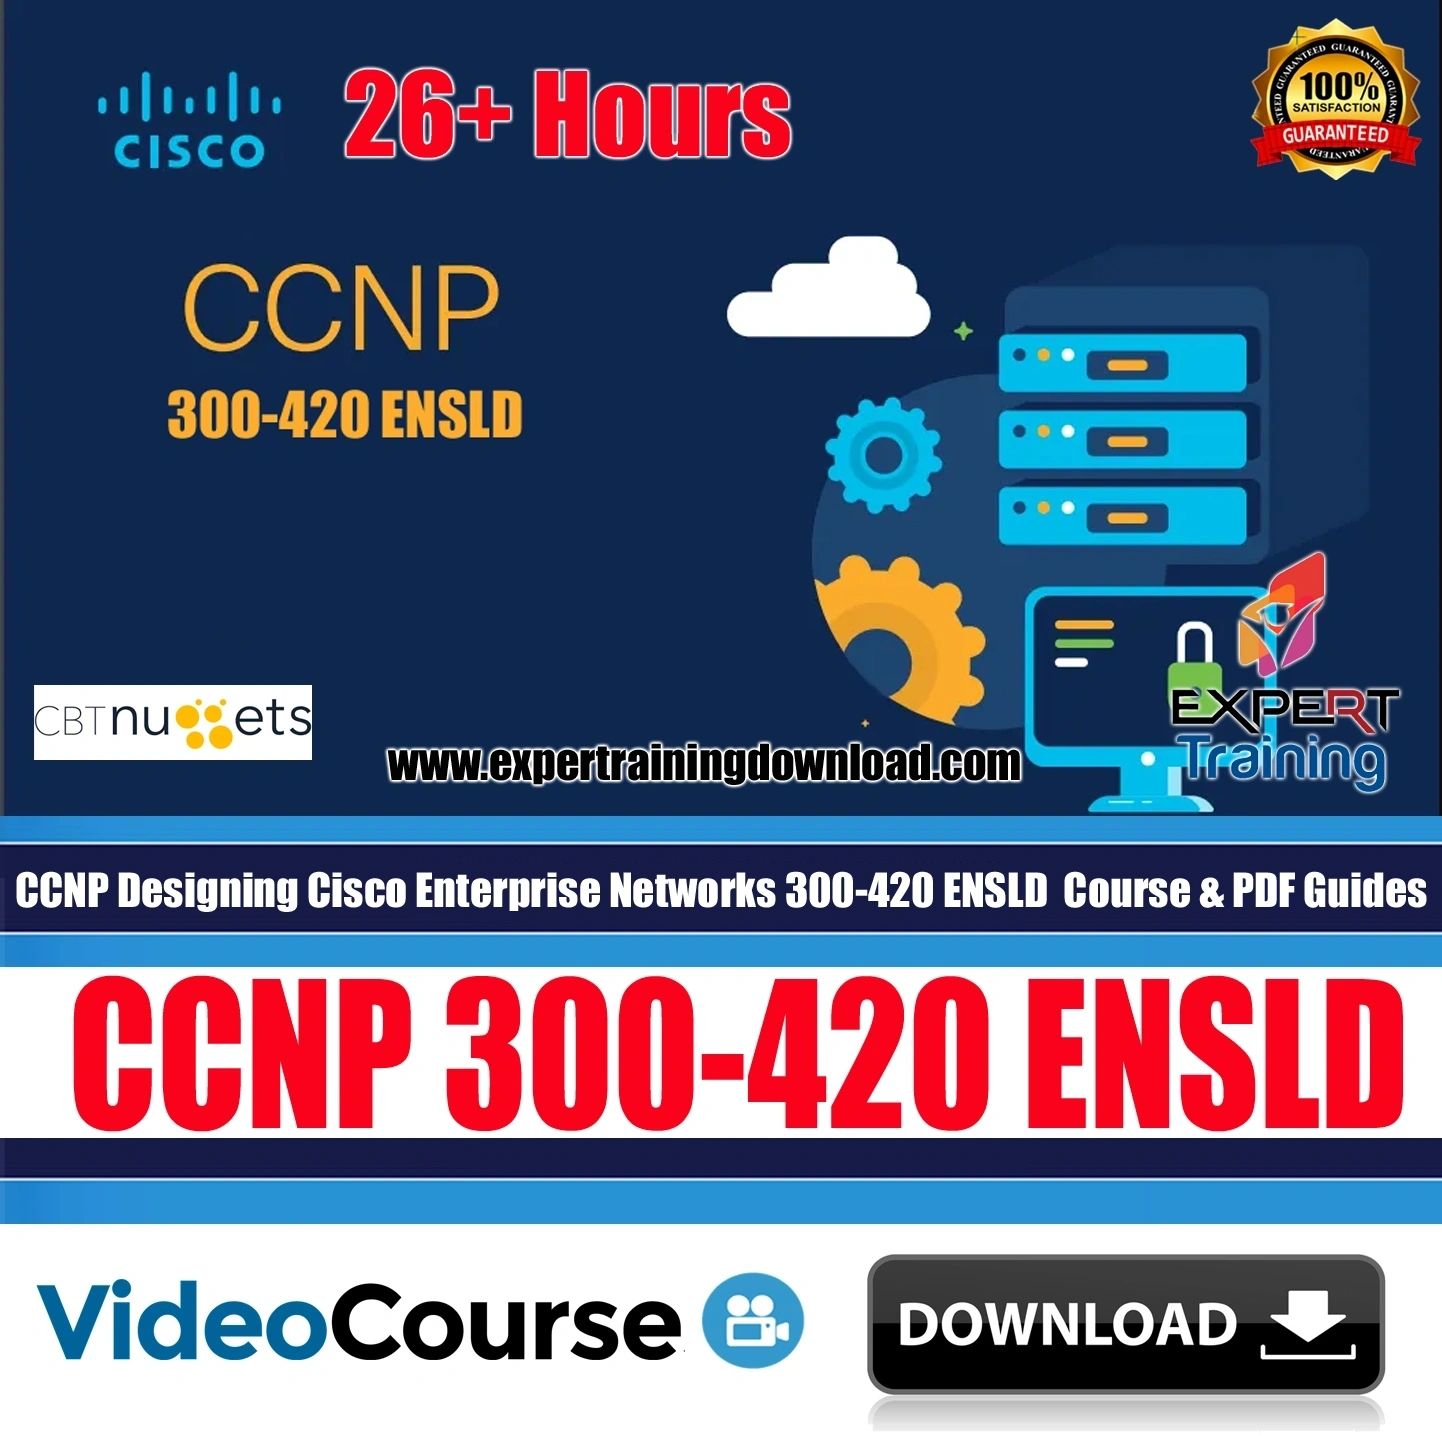 CCNP Designing Cisco Enterprise Networks 300-420 ENSLD Course & PDF Guides